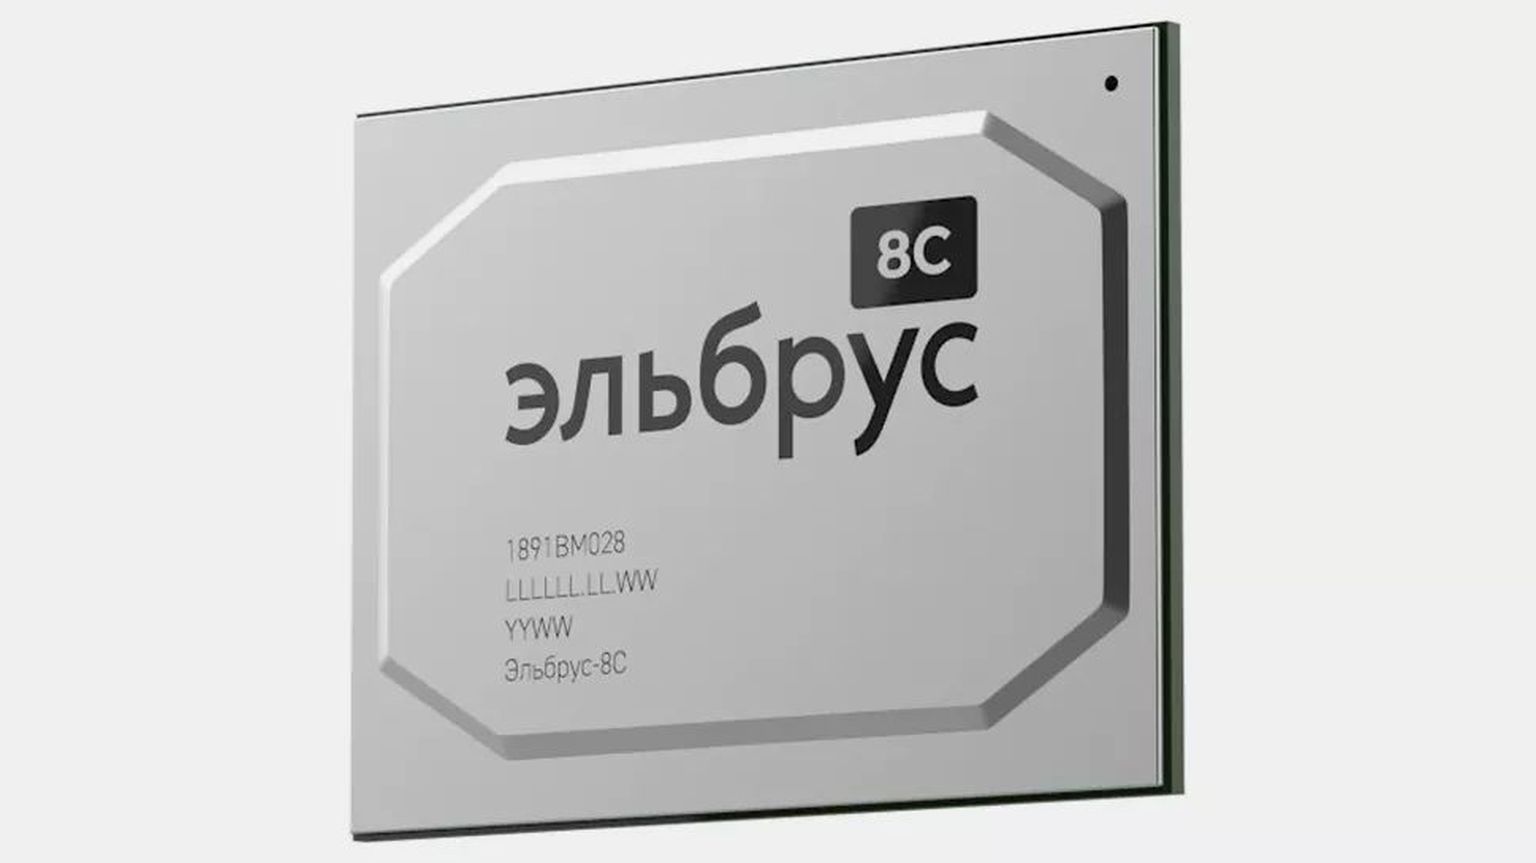 Venemaal disainitud protsessor Elbrus on küll tootmiseks valmis, kuid Taiwanilt ei saadeta neid enam tellijale vaatamata sellele, et kiip on venelaste endi poolt välja arendatud.